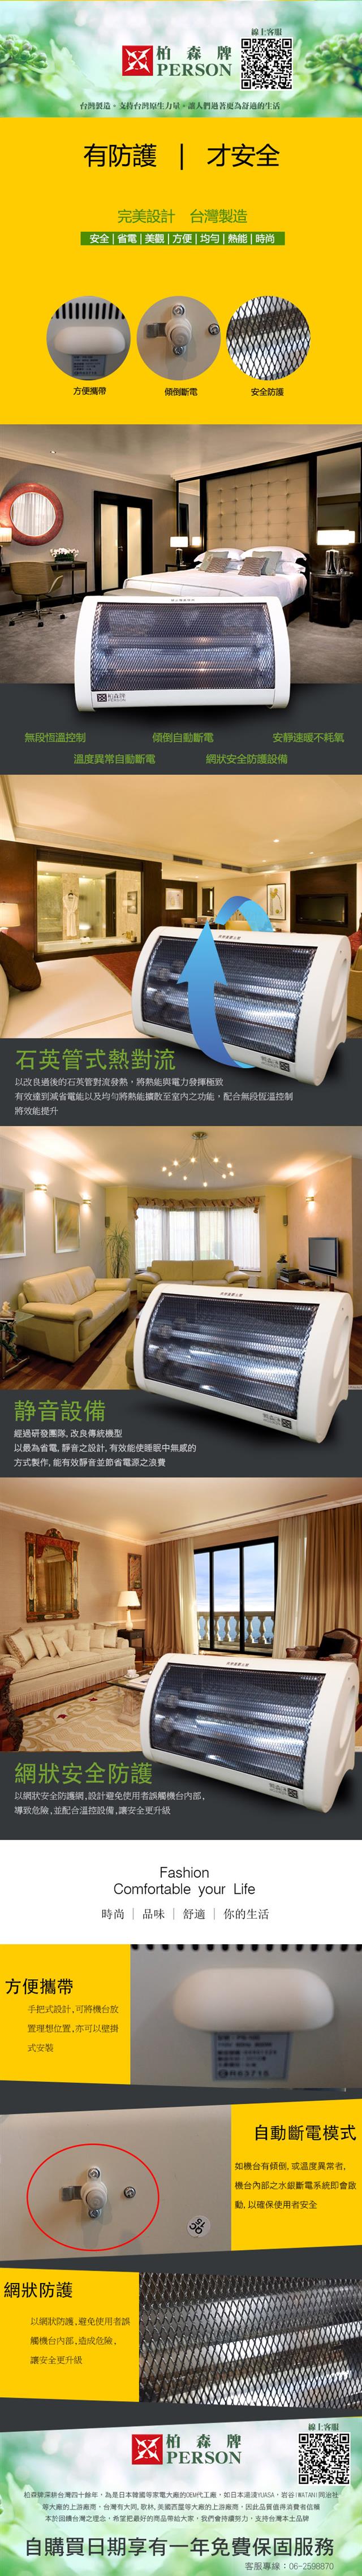 福利品 | 柏森牌 | 石英燈管臥式電暖器 PS-100